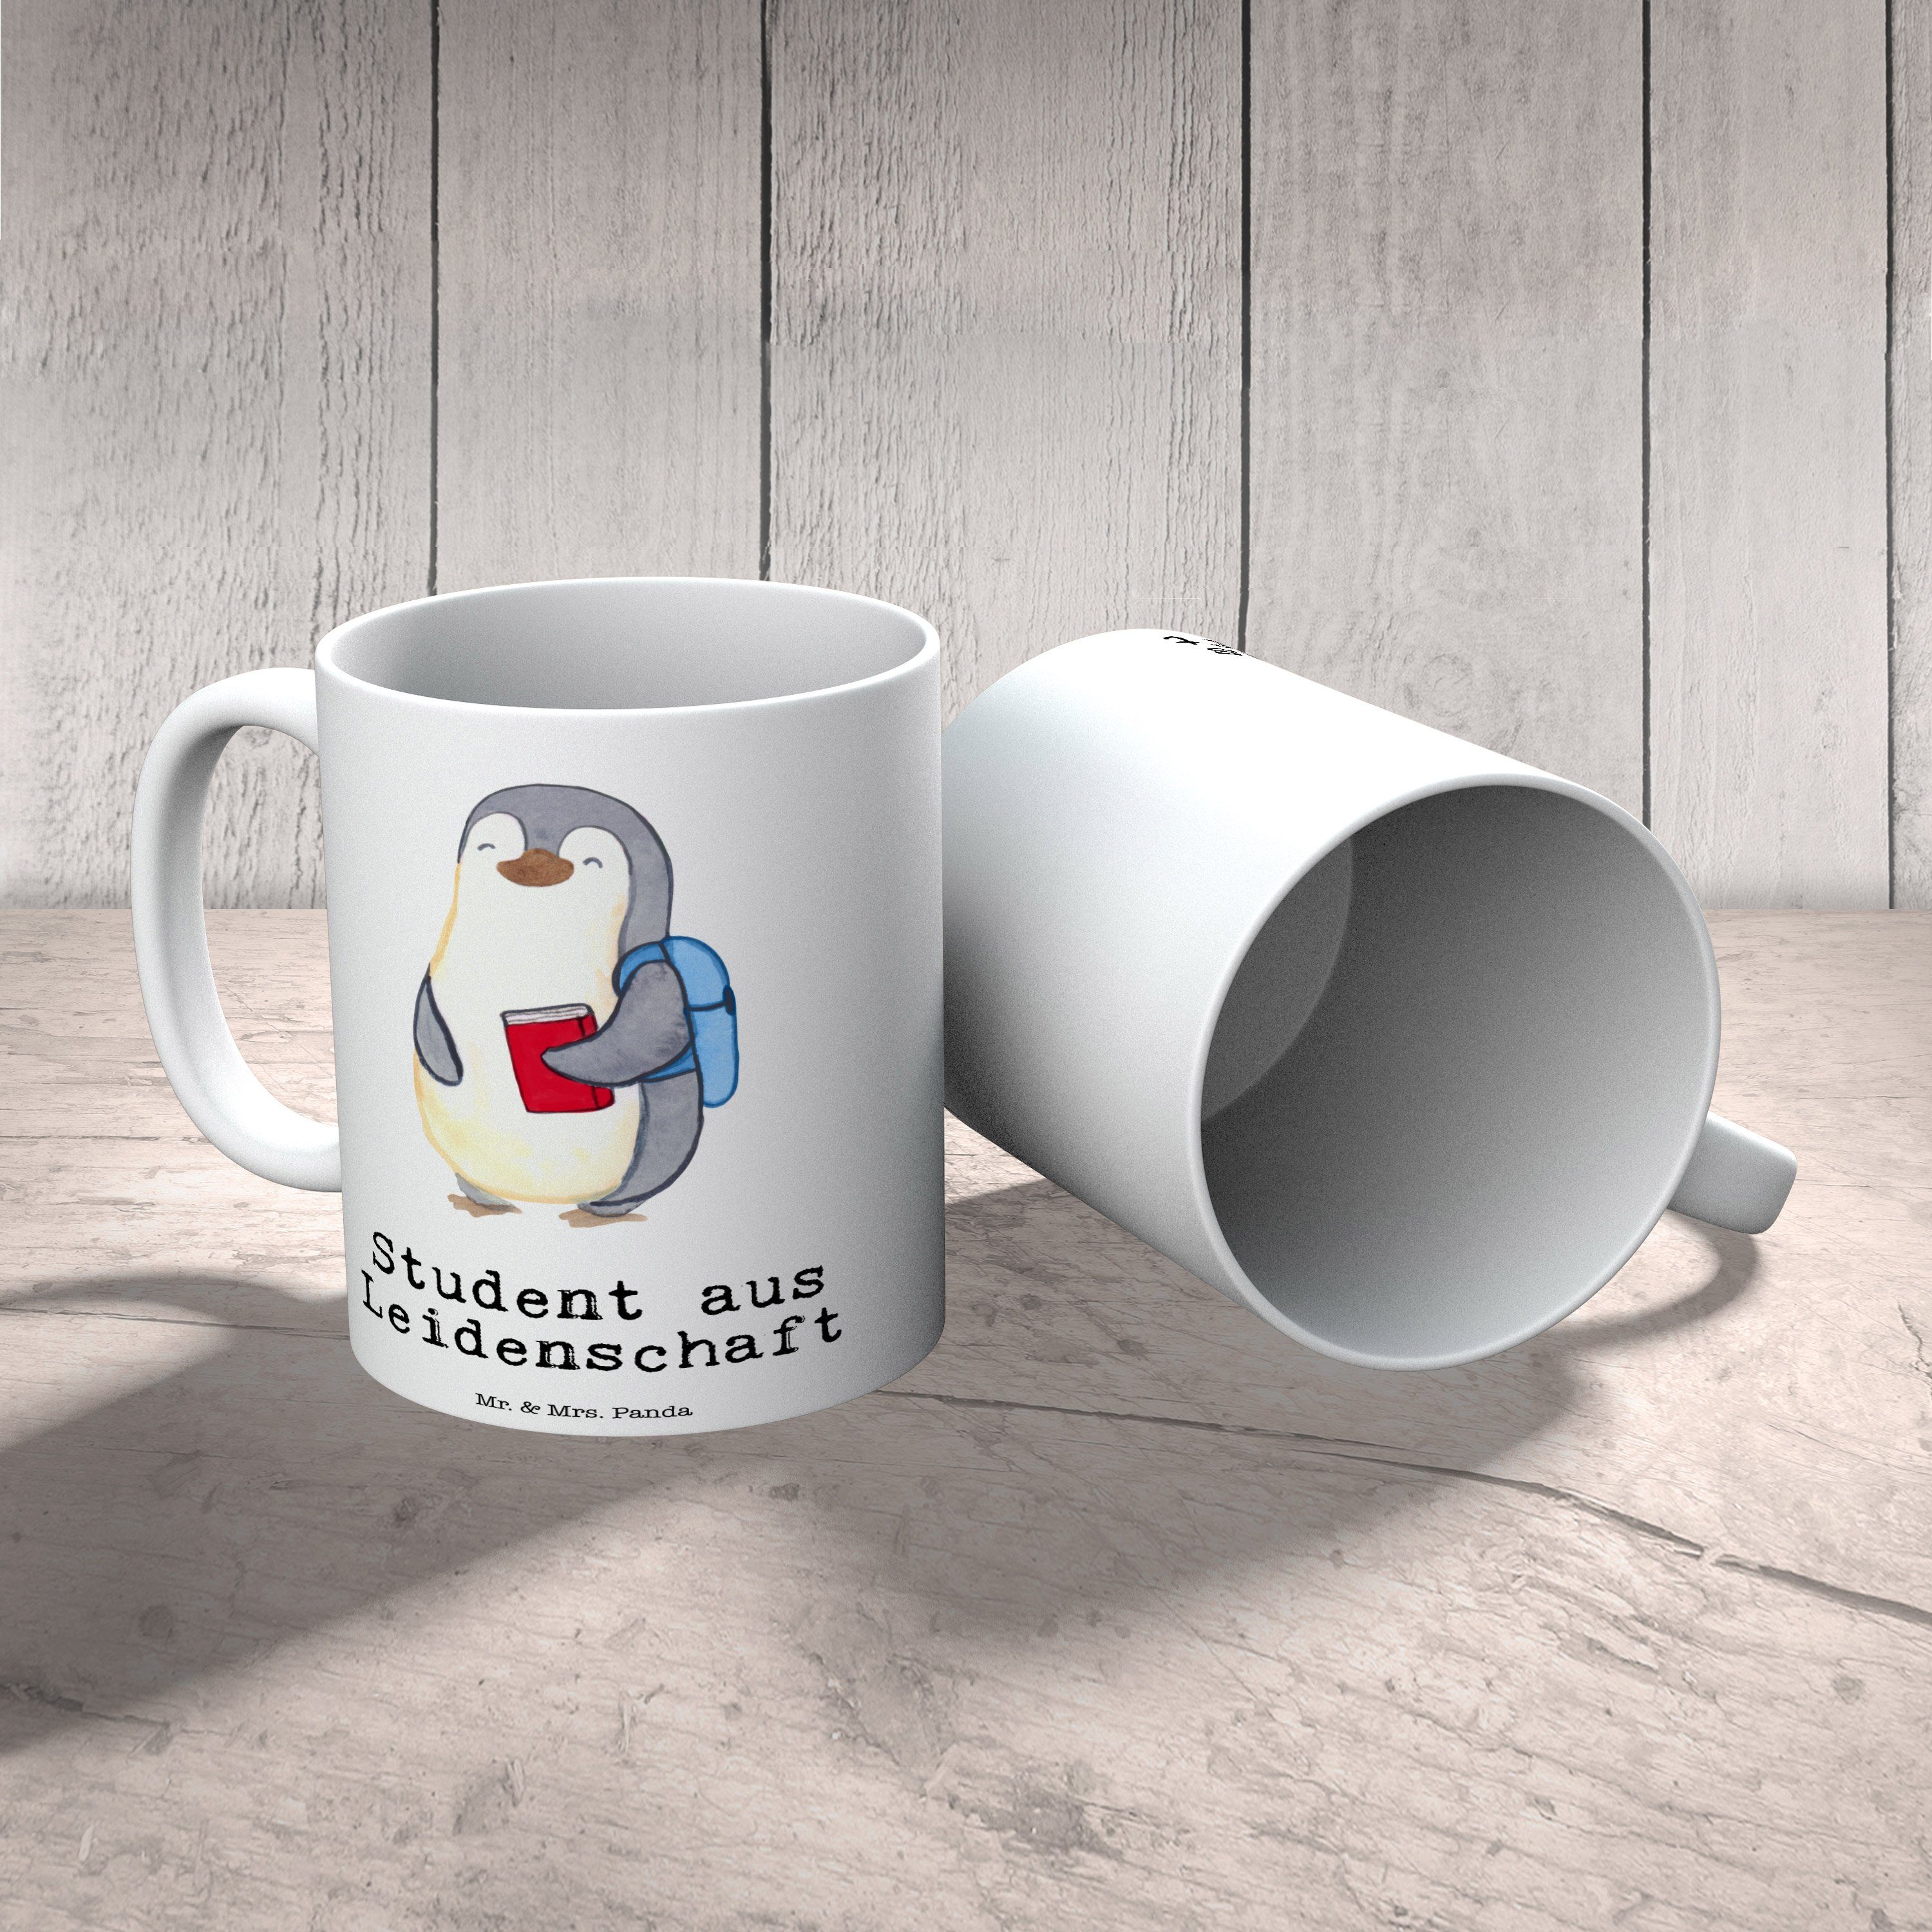 Mrs. & Geschenk, aus Student Weiß Beruf, Motive, Dank, - Leidenschaft Panda - Tasse Mr. Keramik Tasse